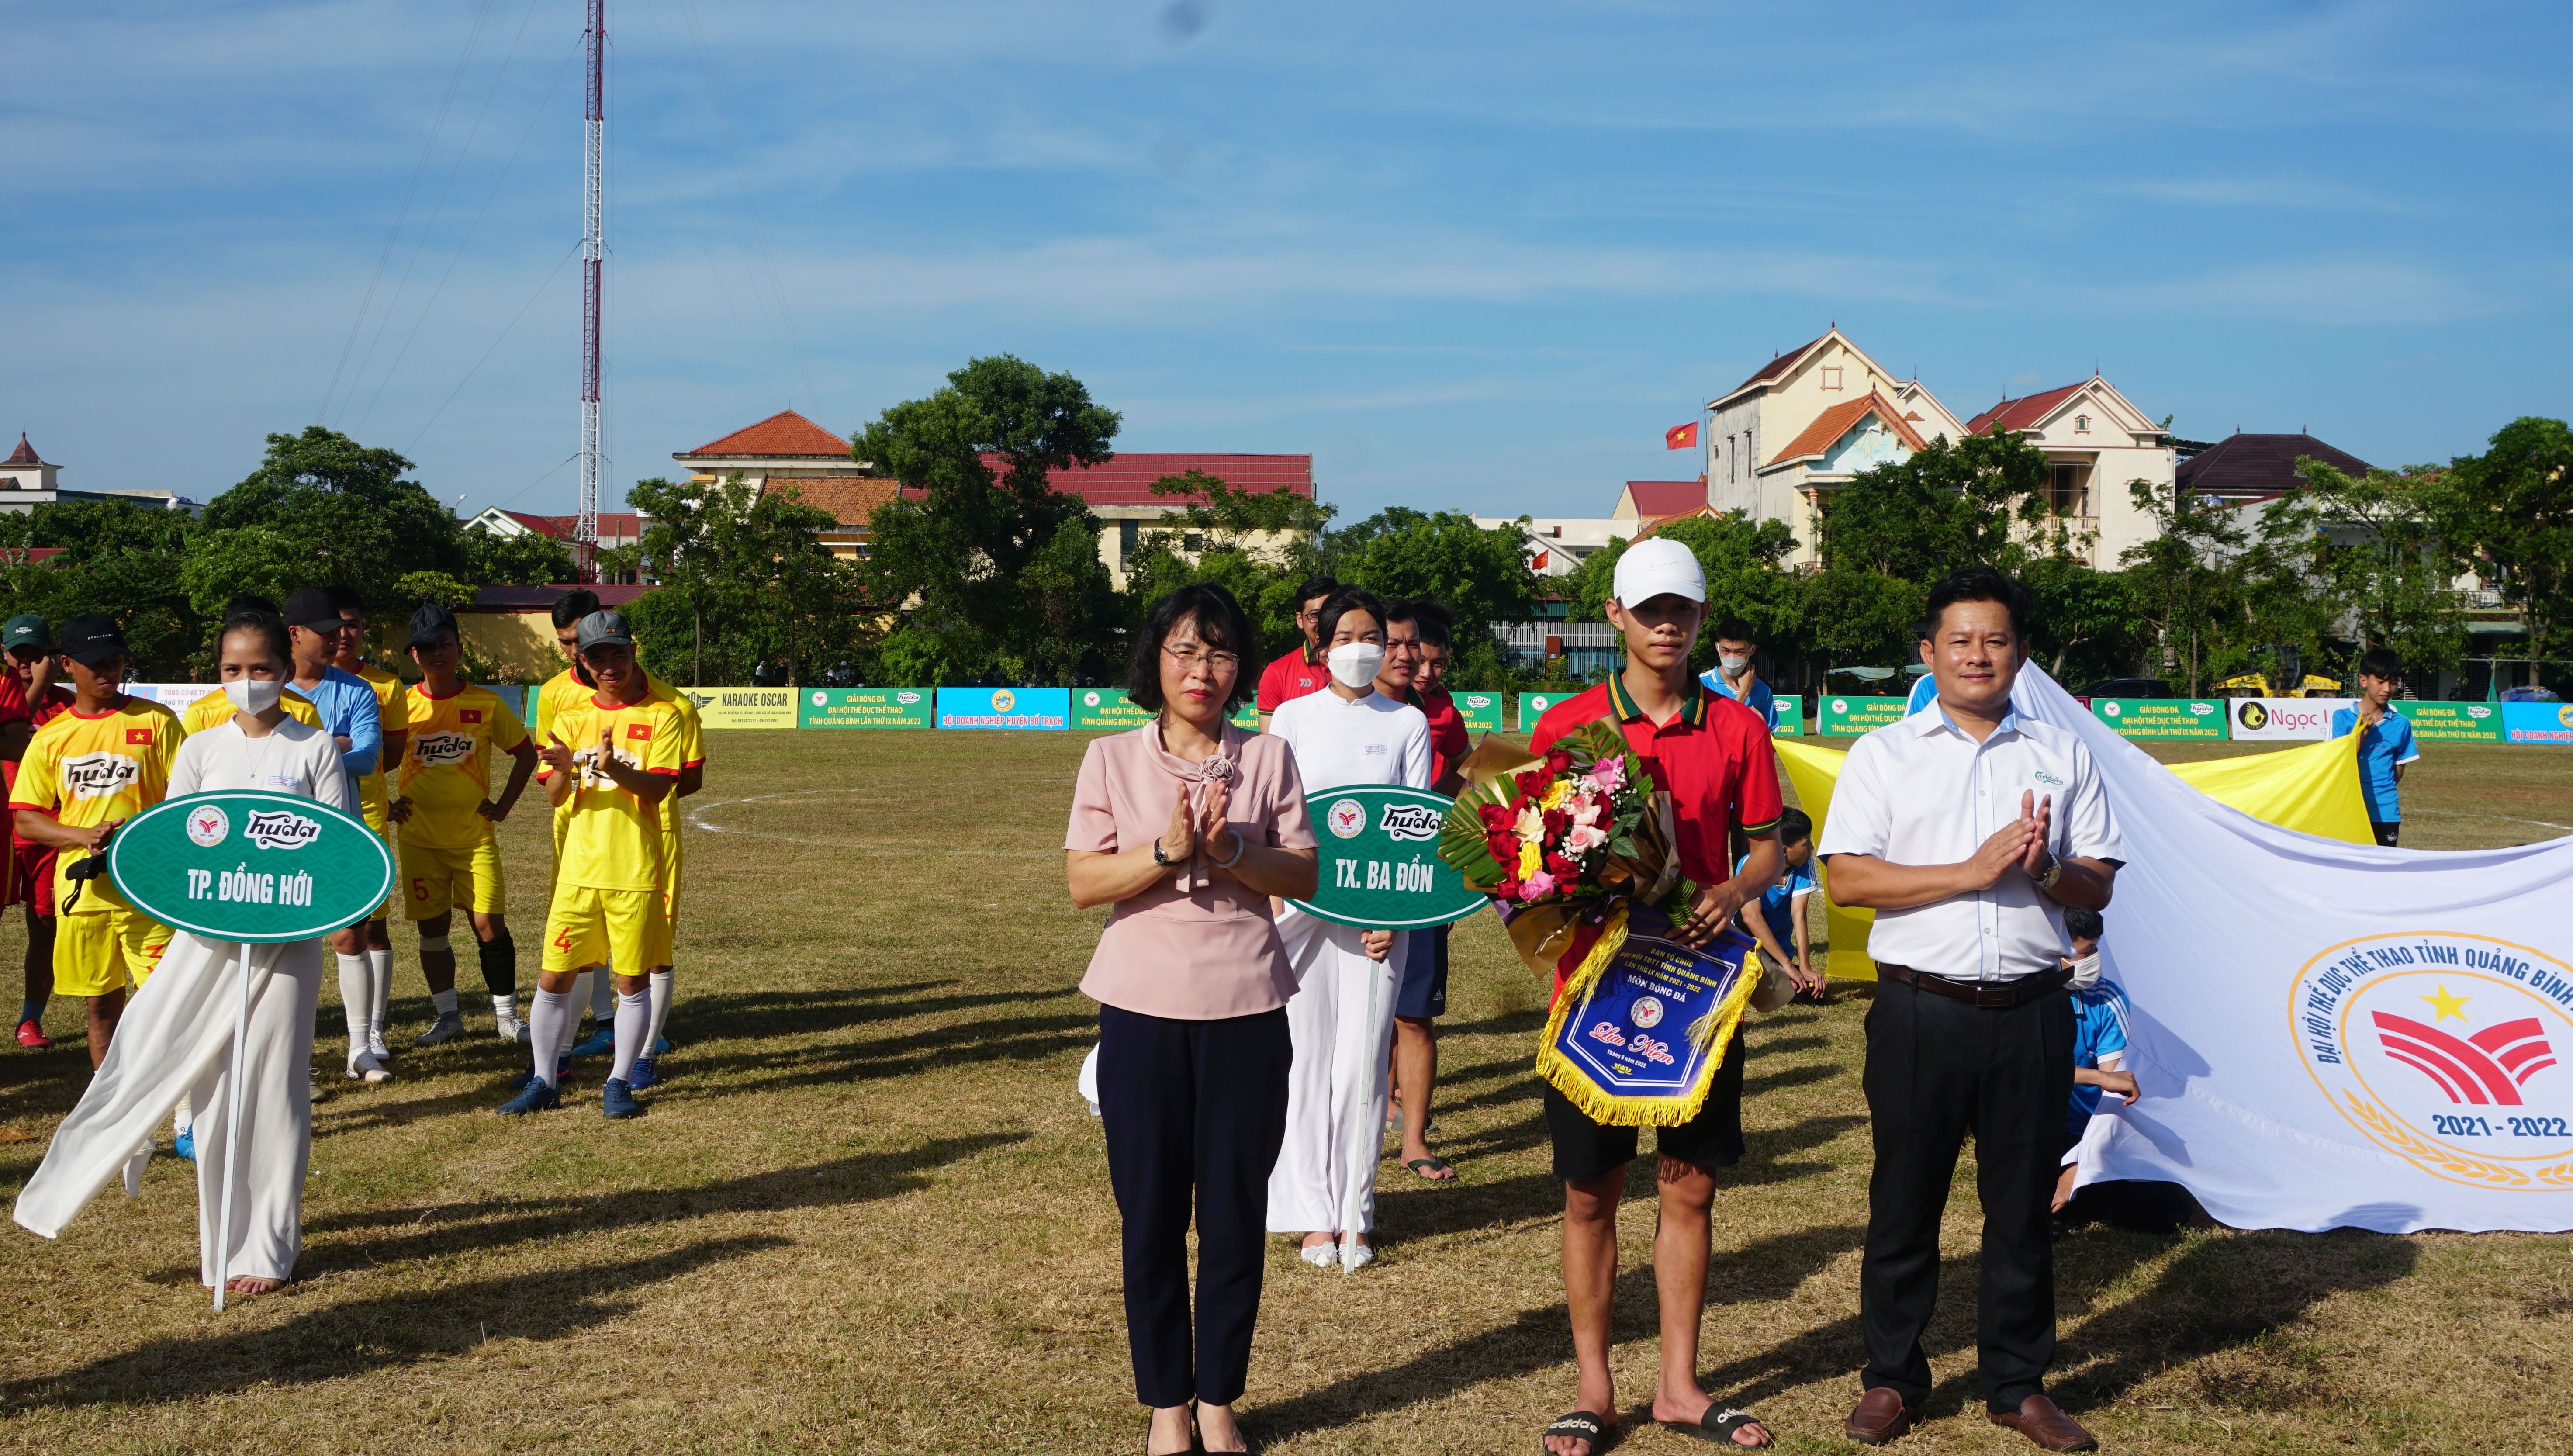 Ban tổ chức tặng hoa, cờ lưu niệm cho các đội bóng tham gia giải.